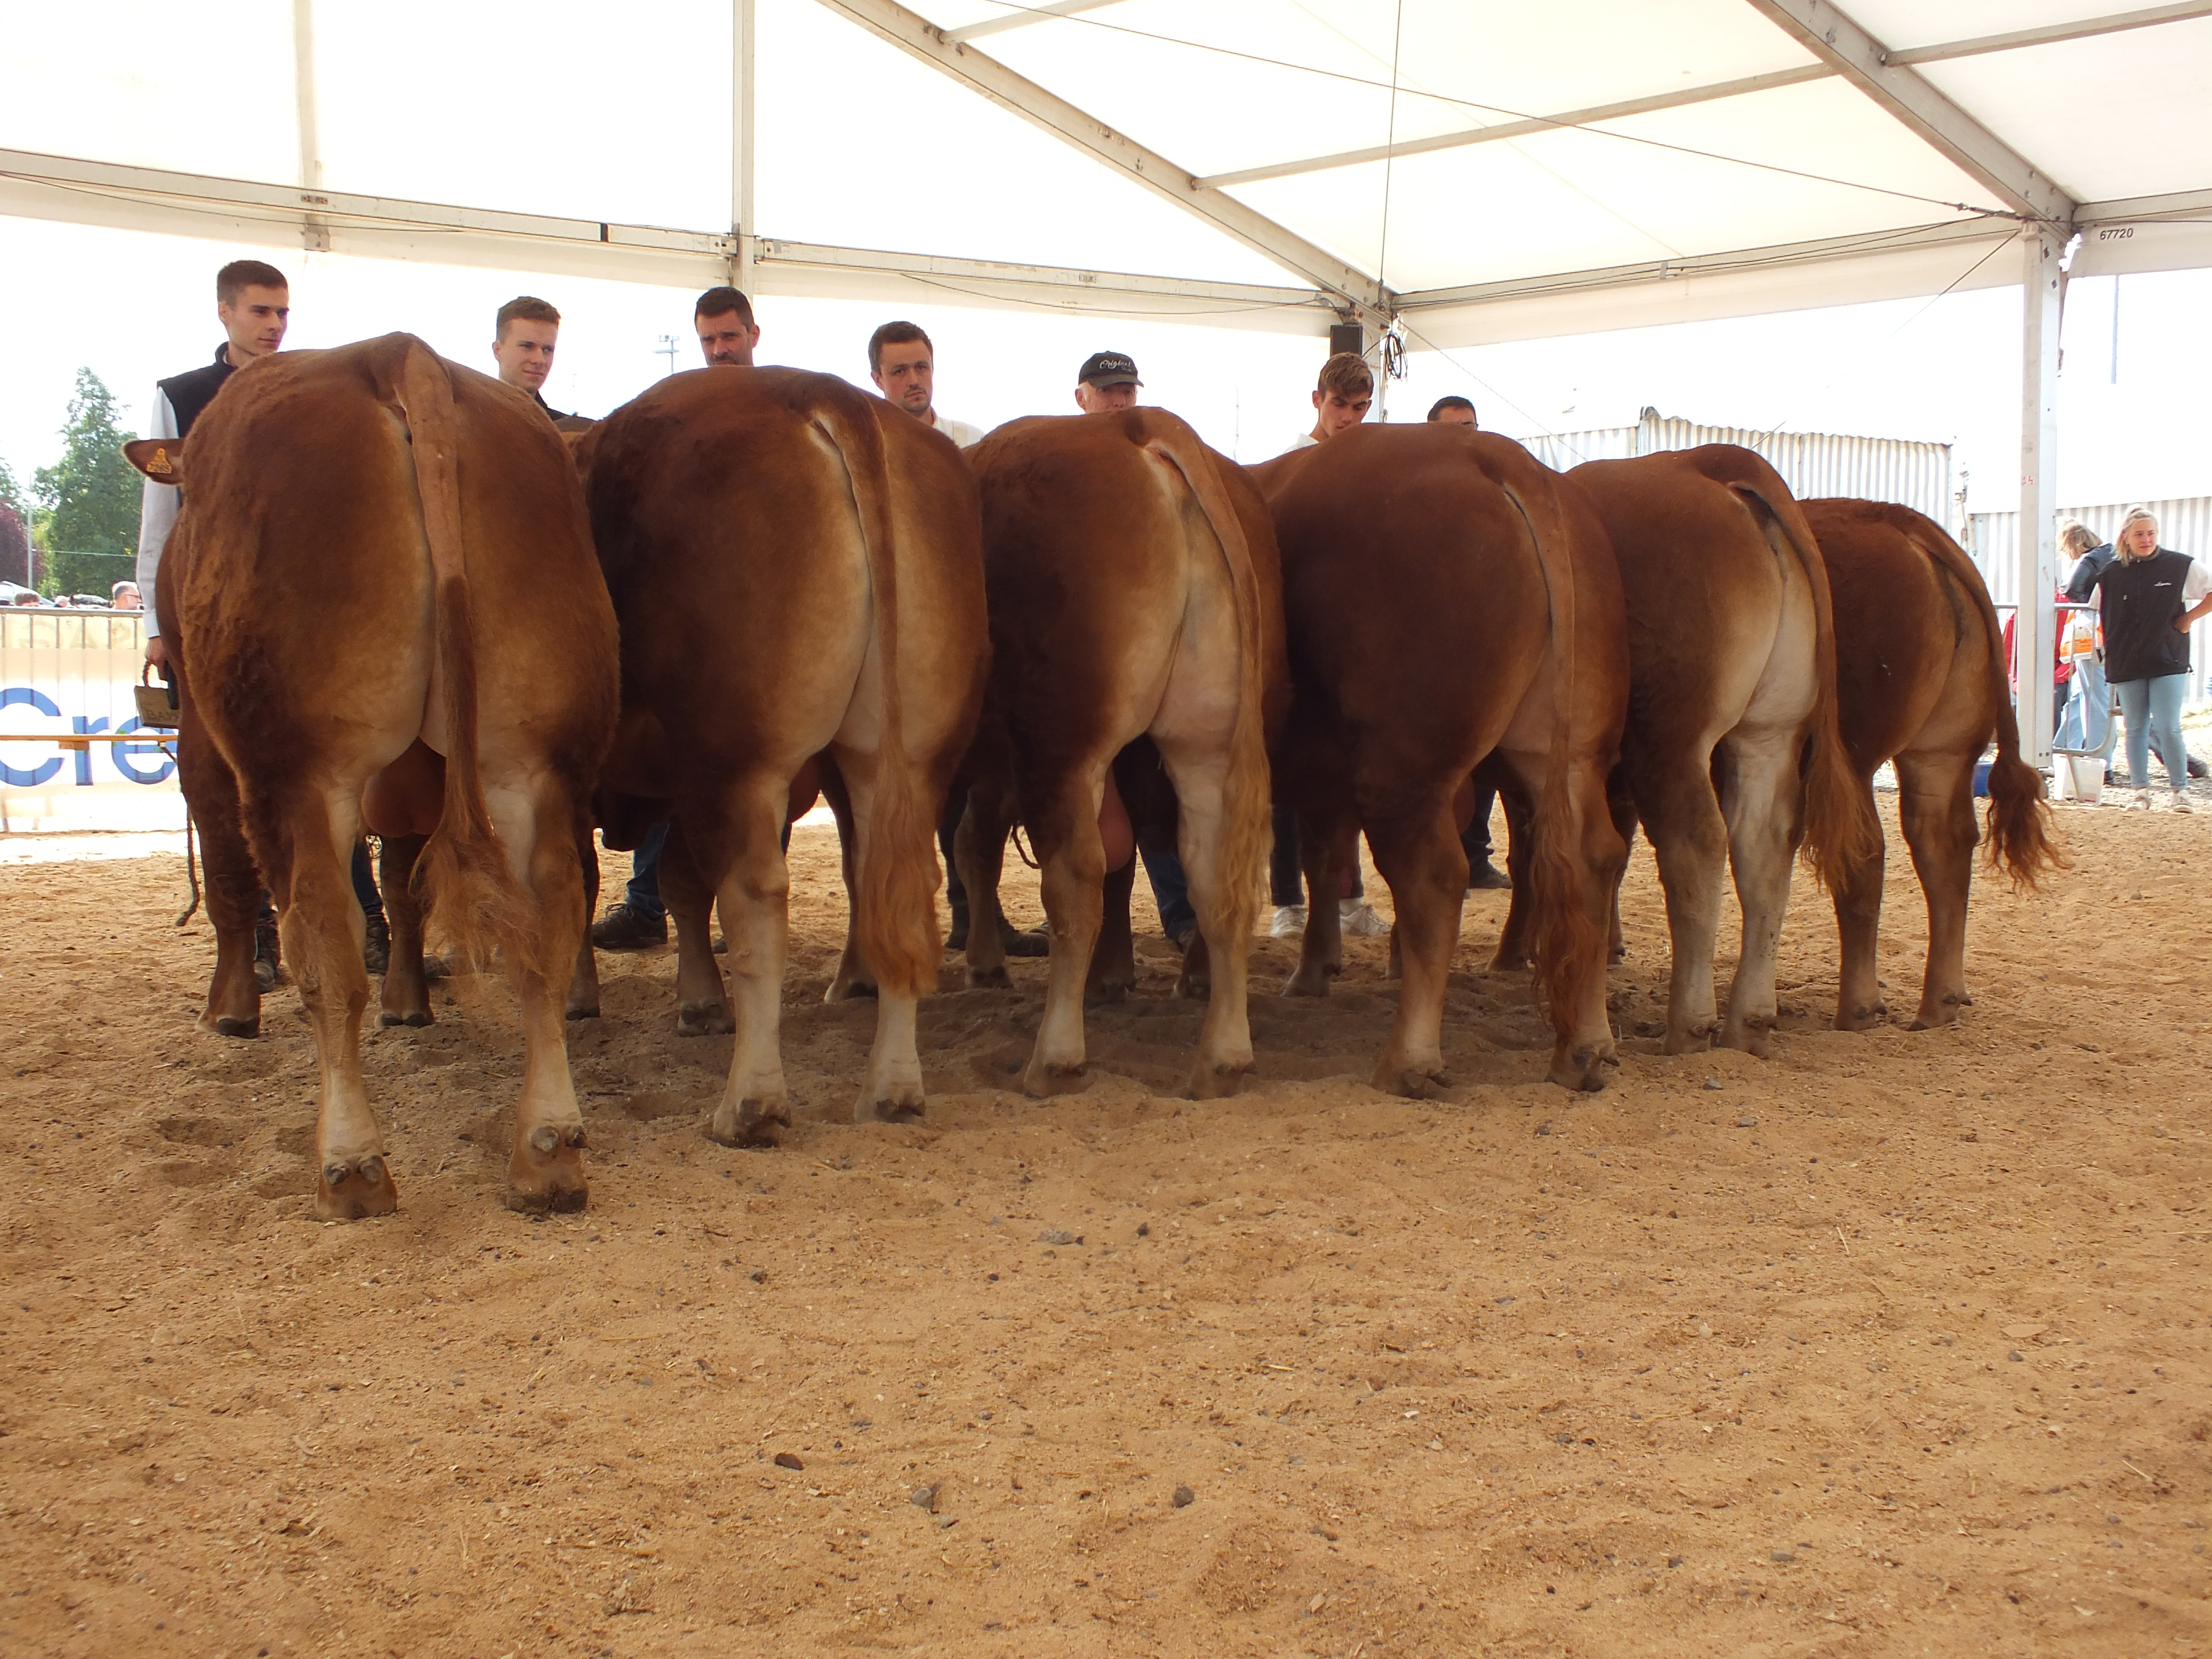 Le concours interdépartemental Limousin a réuni une soixantaine d'animaux de grande qualité. Photo : AH.